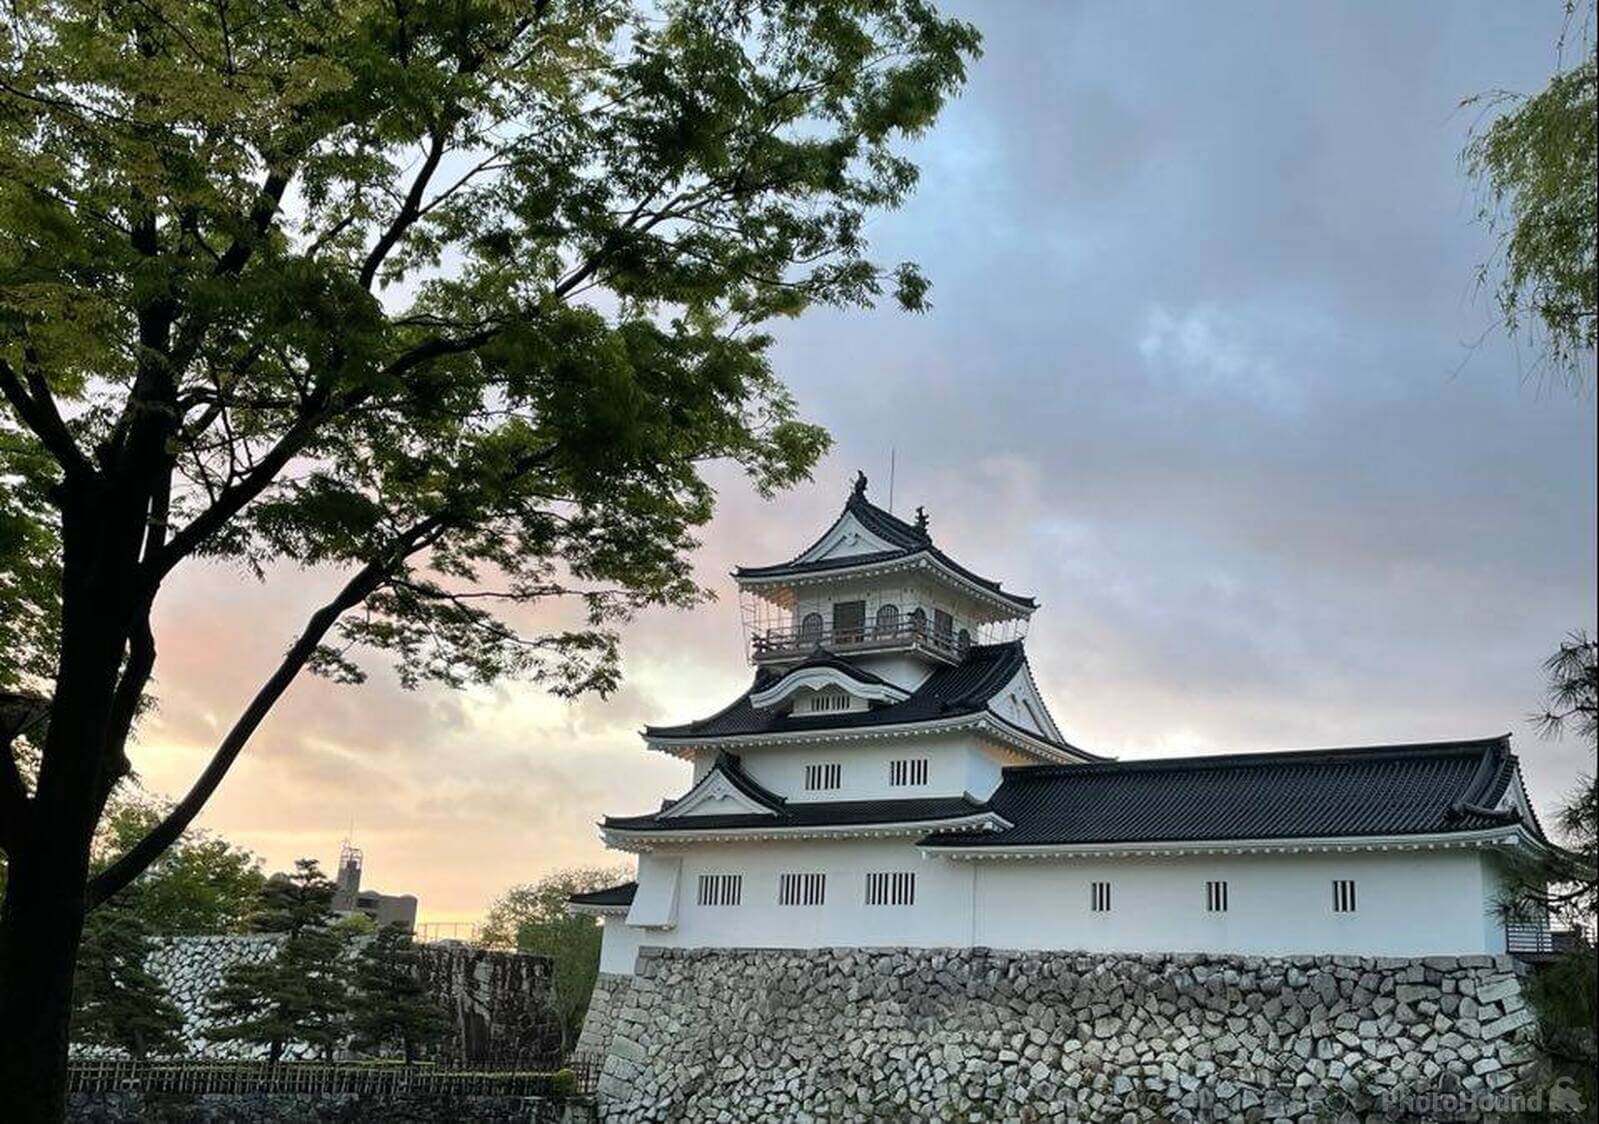 Image of Toyama Castle by Zoe Solnick